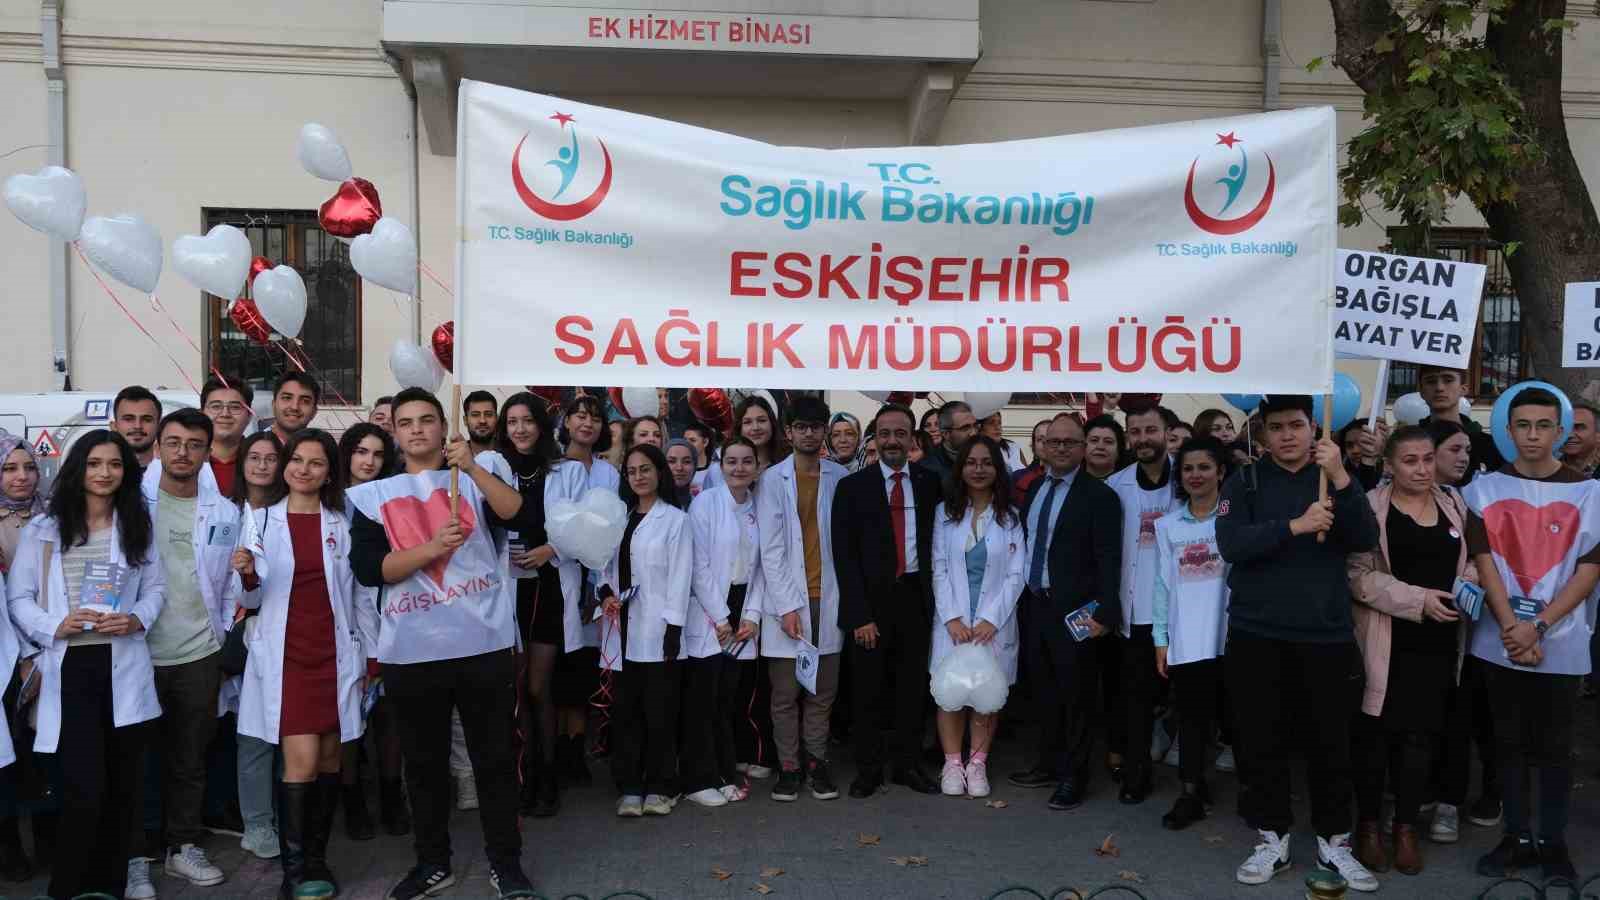 Sağlık çalışanları ve vatandaş ‘Organ Bağışı Haftası’ yürüyüşünü gerçekleştirdi